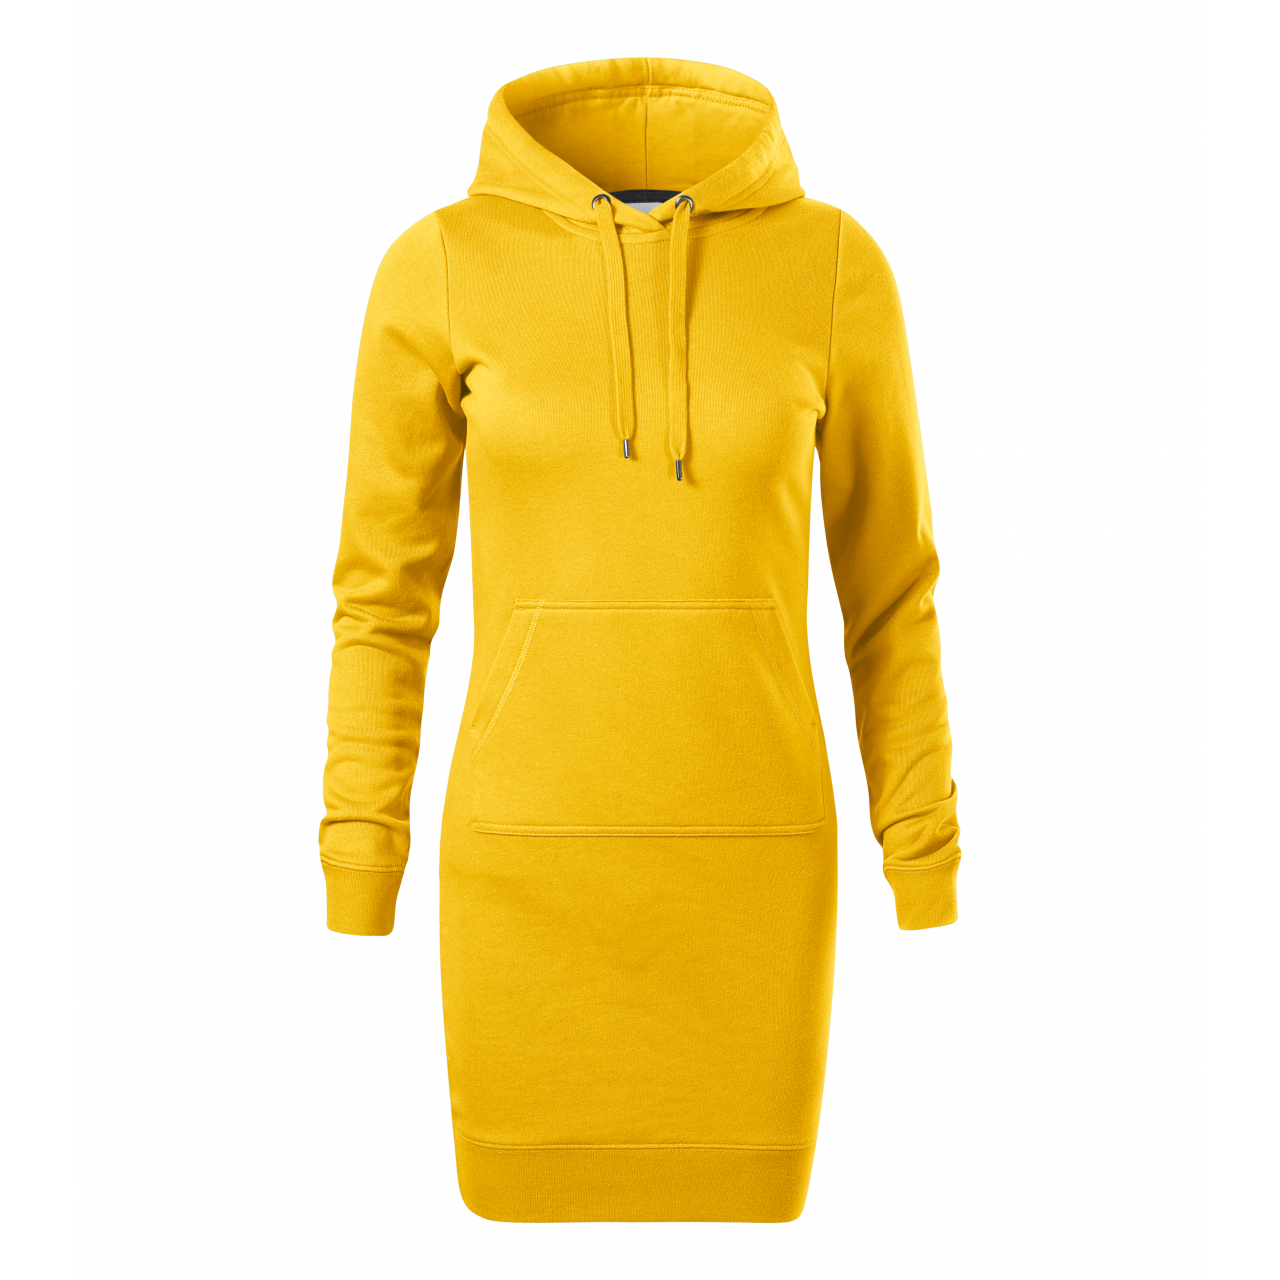 Šaty dámské Malfini Snap - žluté, XL